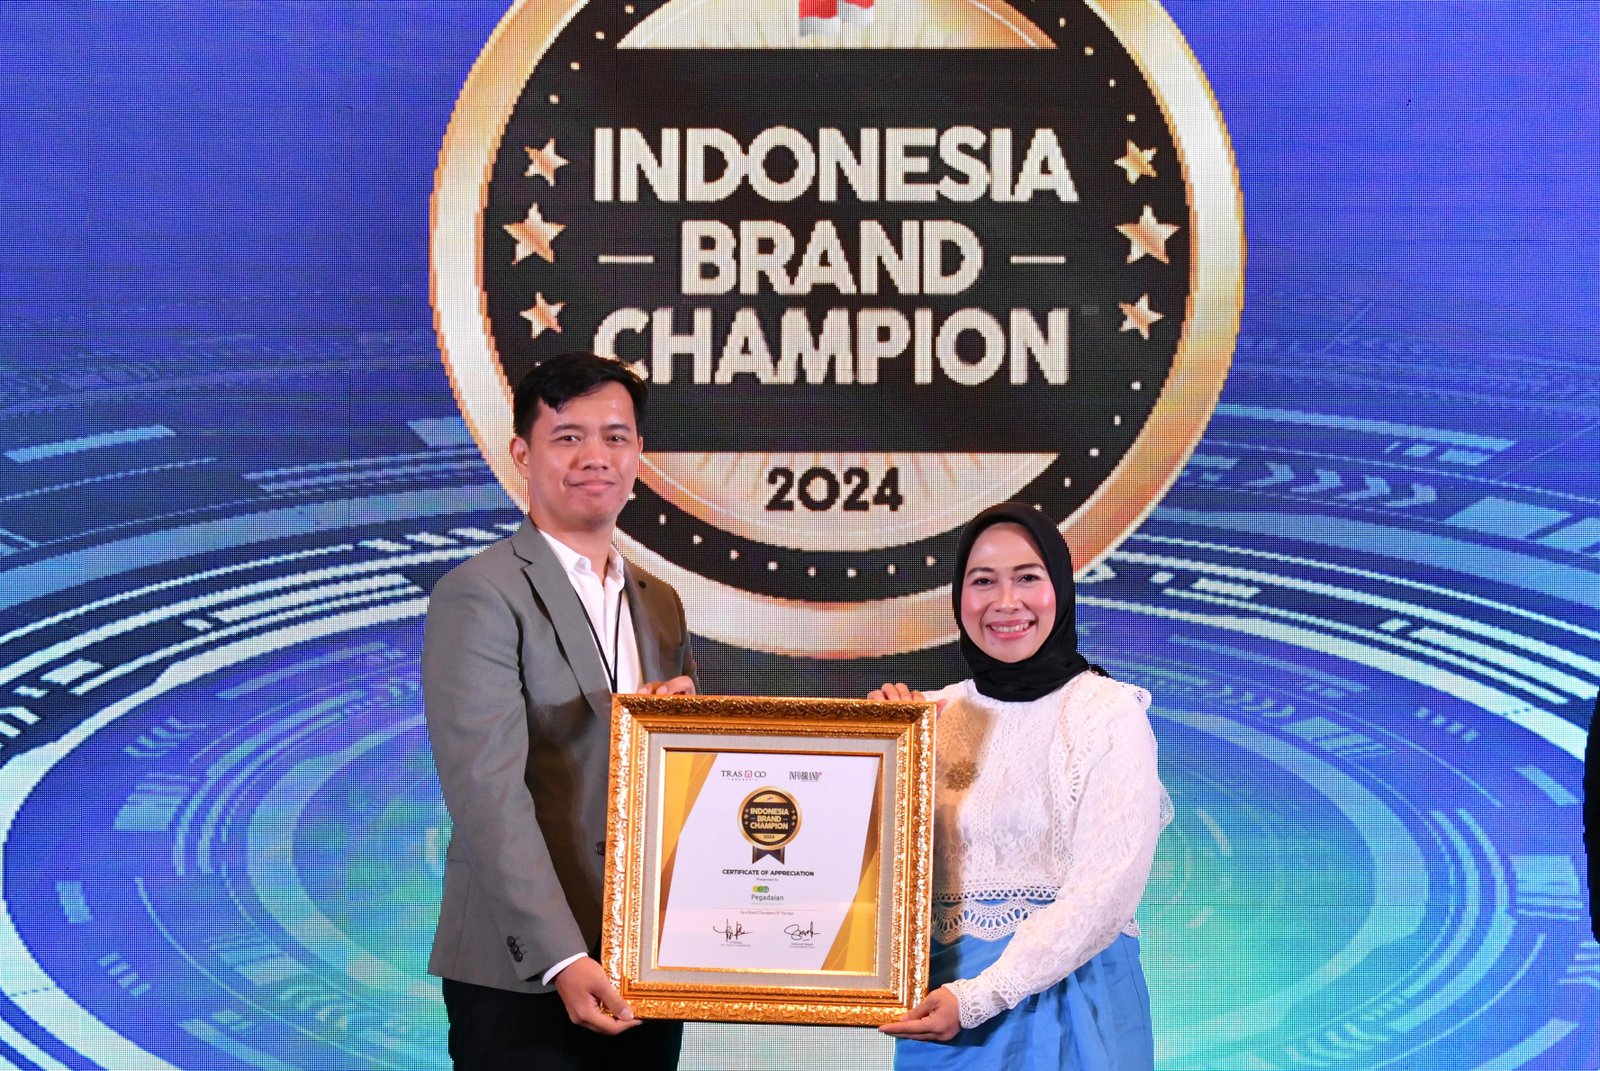 Sukses Bertransformasi Dalam Produk & Layanan, Pegadaian Raih Indonesia Brand Champion 2024